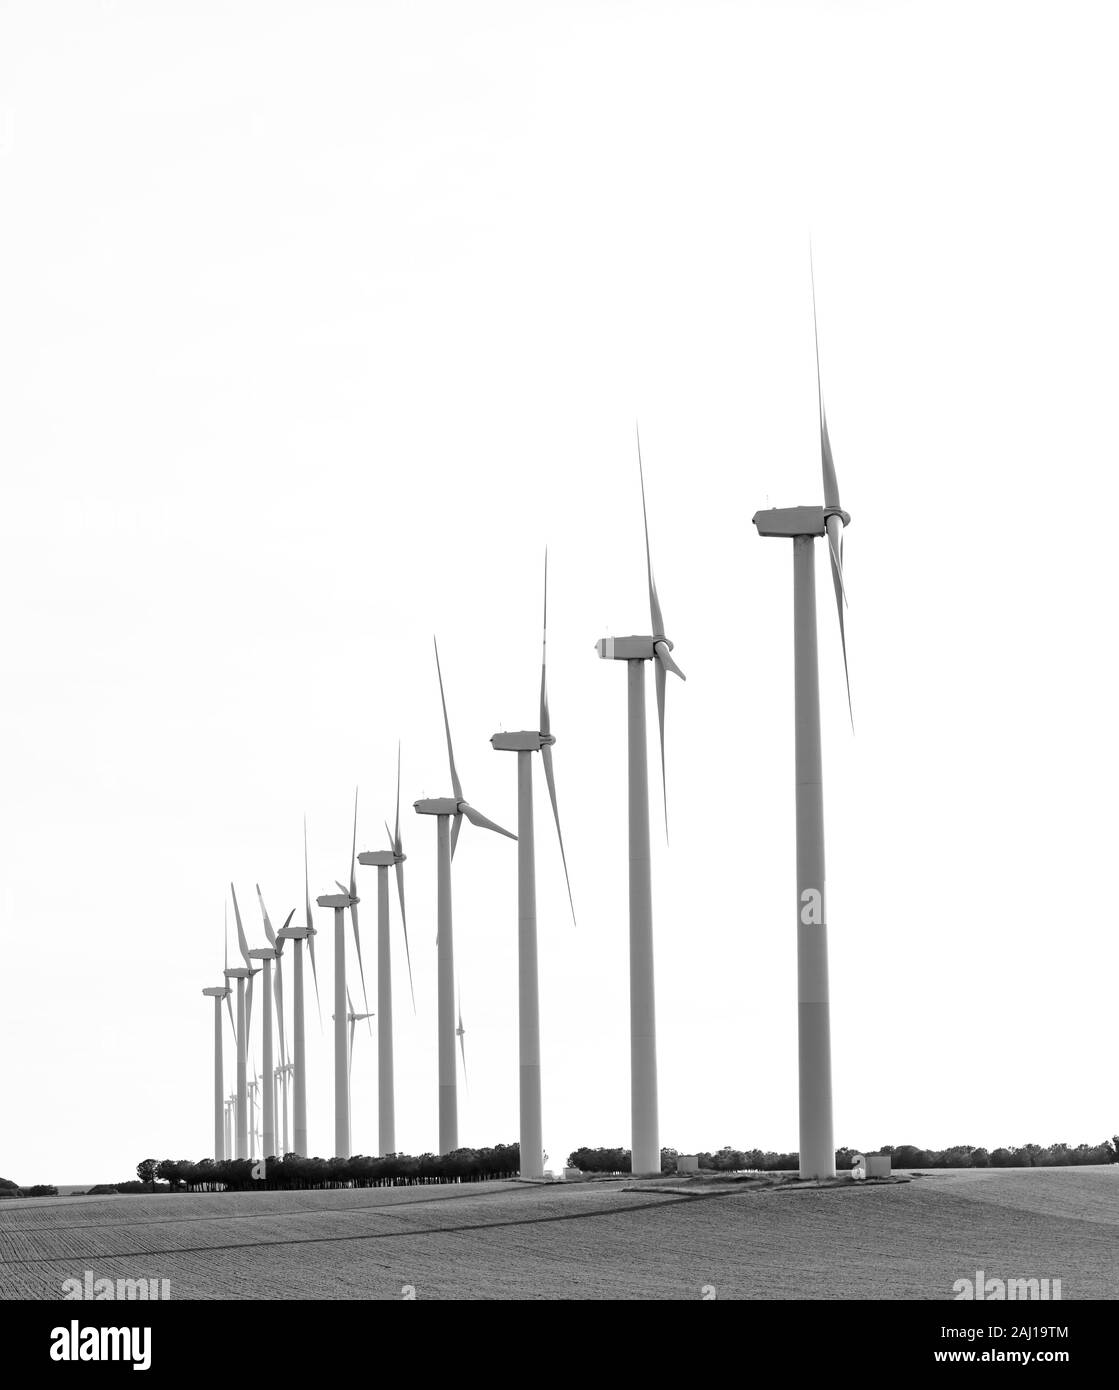 Parc éolien sur un champ avec plusieurs usines produisant de l'électricité propre eolic, espace libre pour le texte ci-dessus, la photographie noir et blanc Banque D'Images